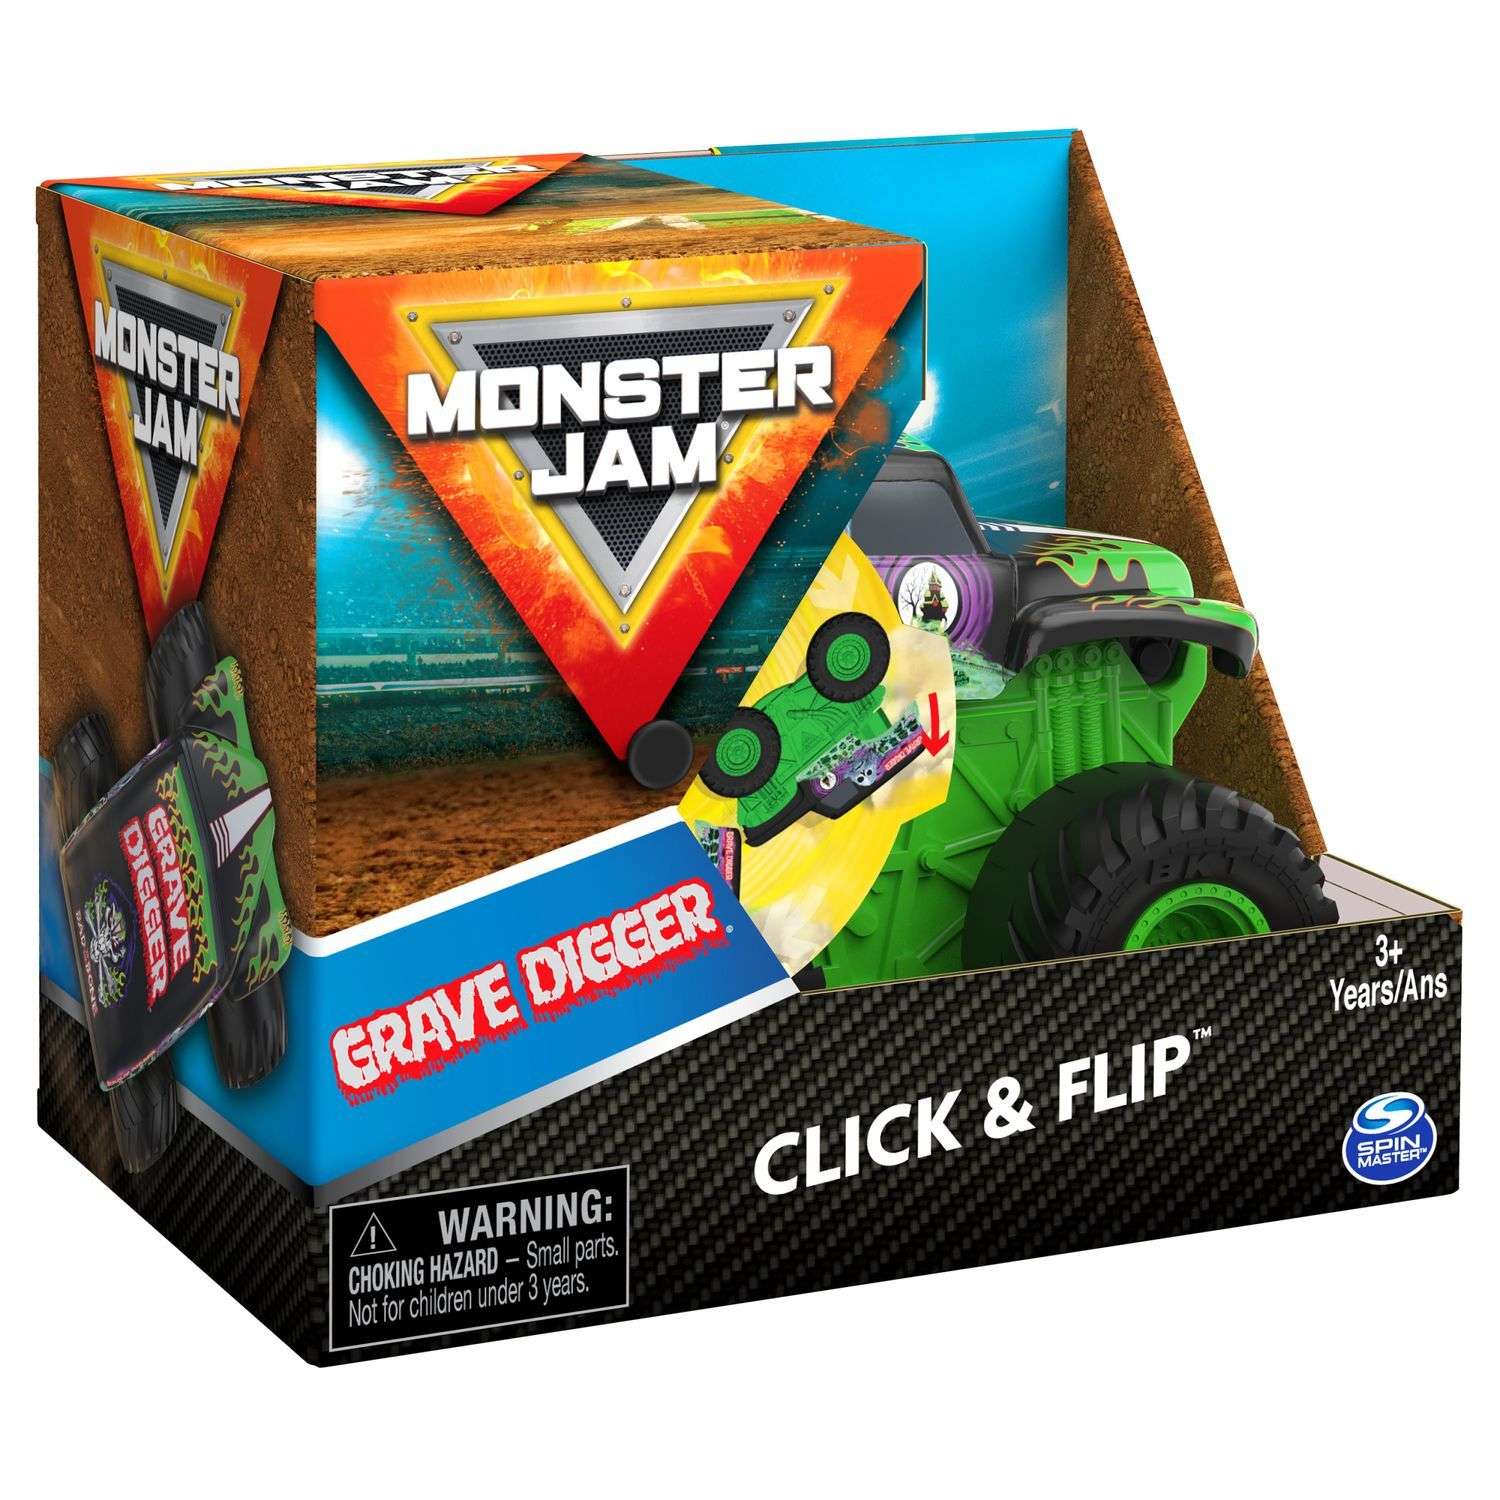 Машинка Monster Jam 1:43 Grave Digger инновационная 6061554 6061554 - фото 4